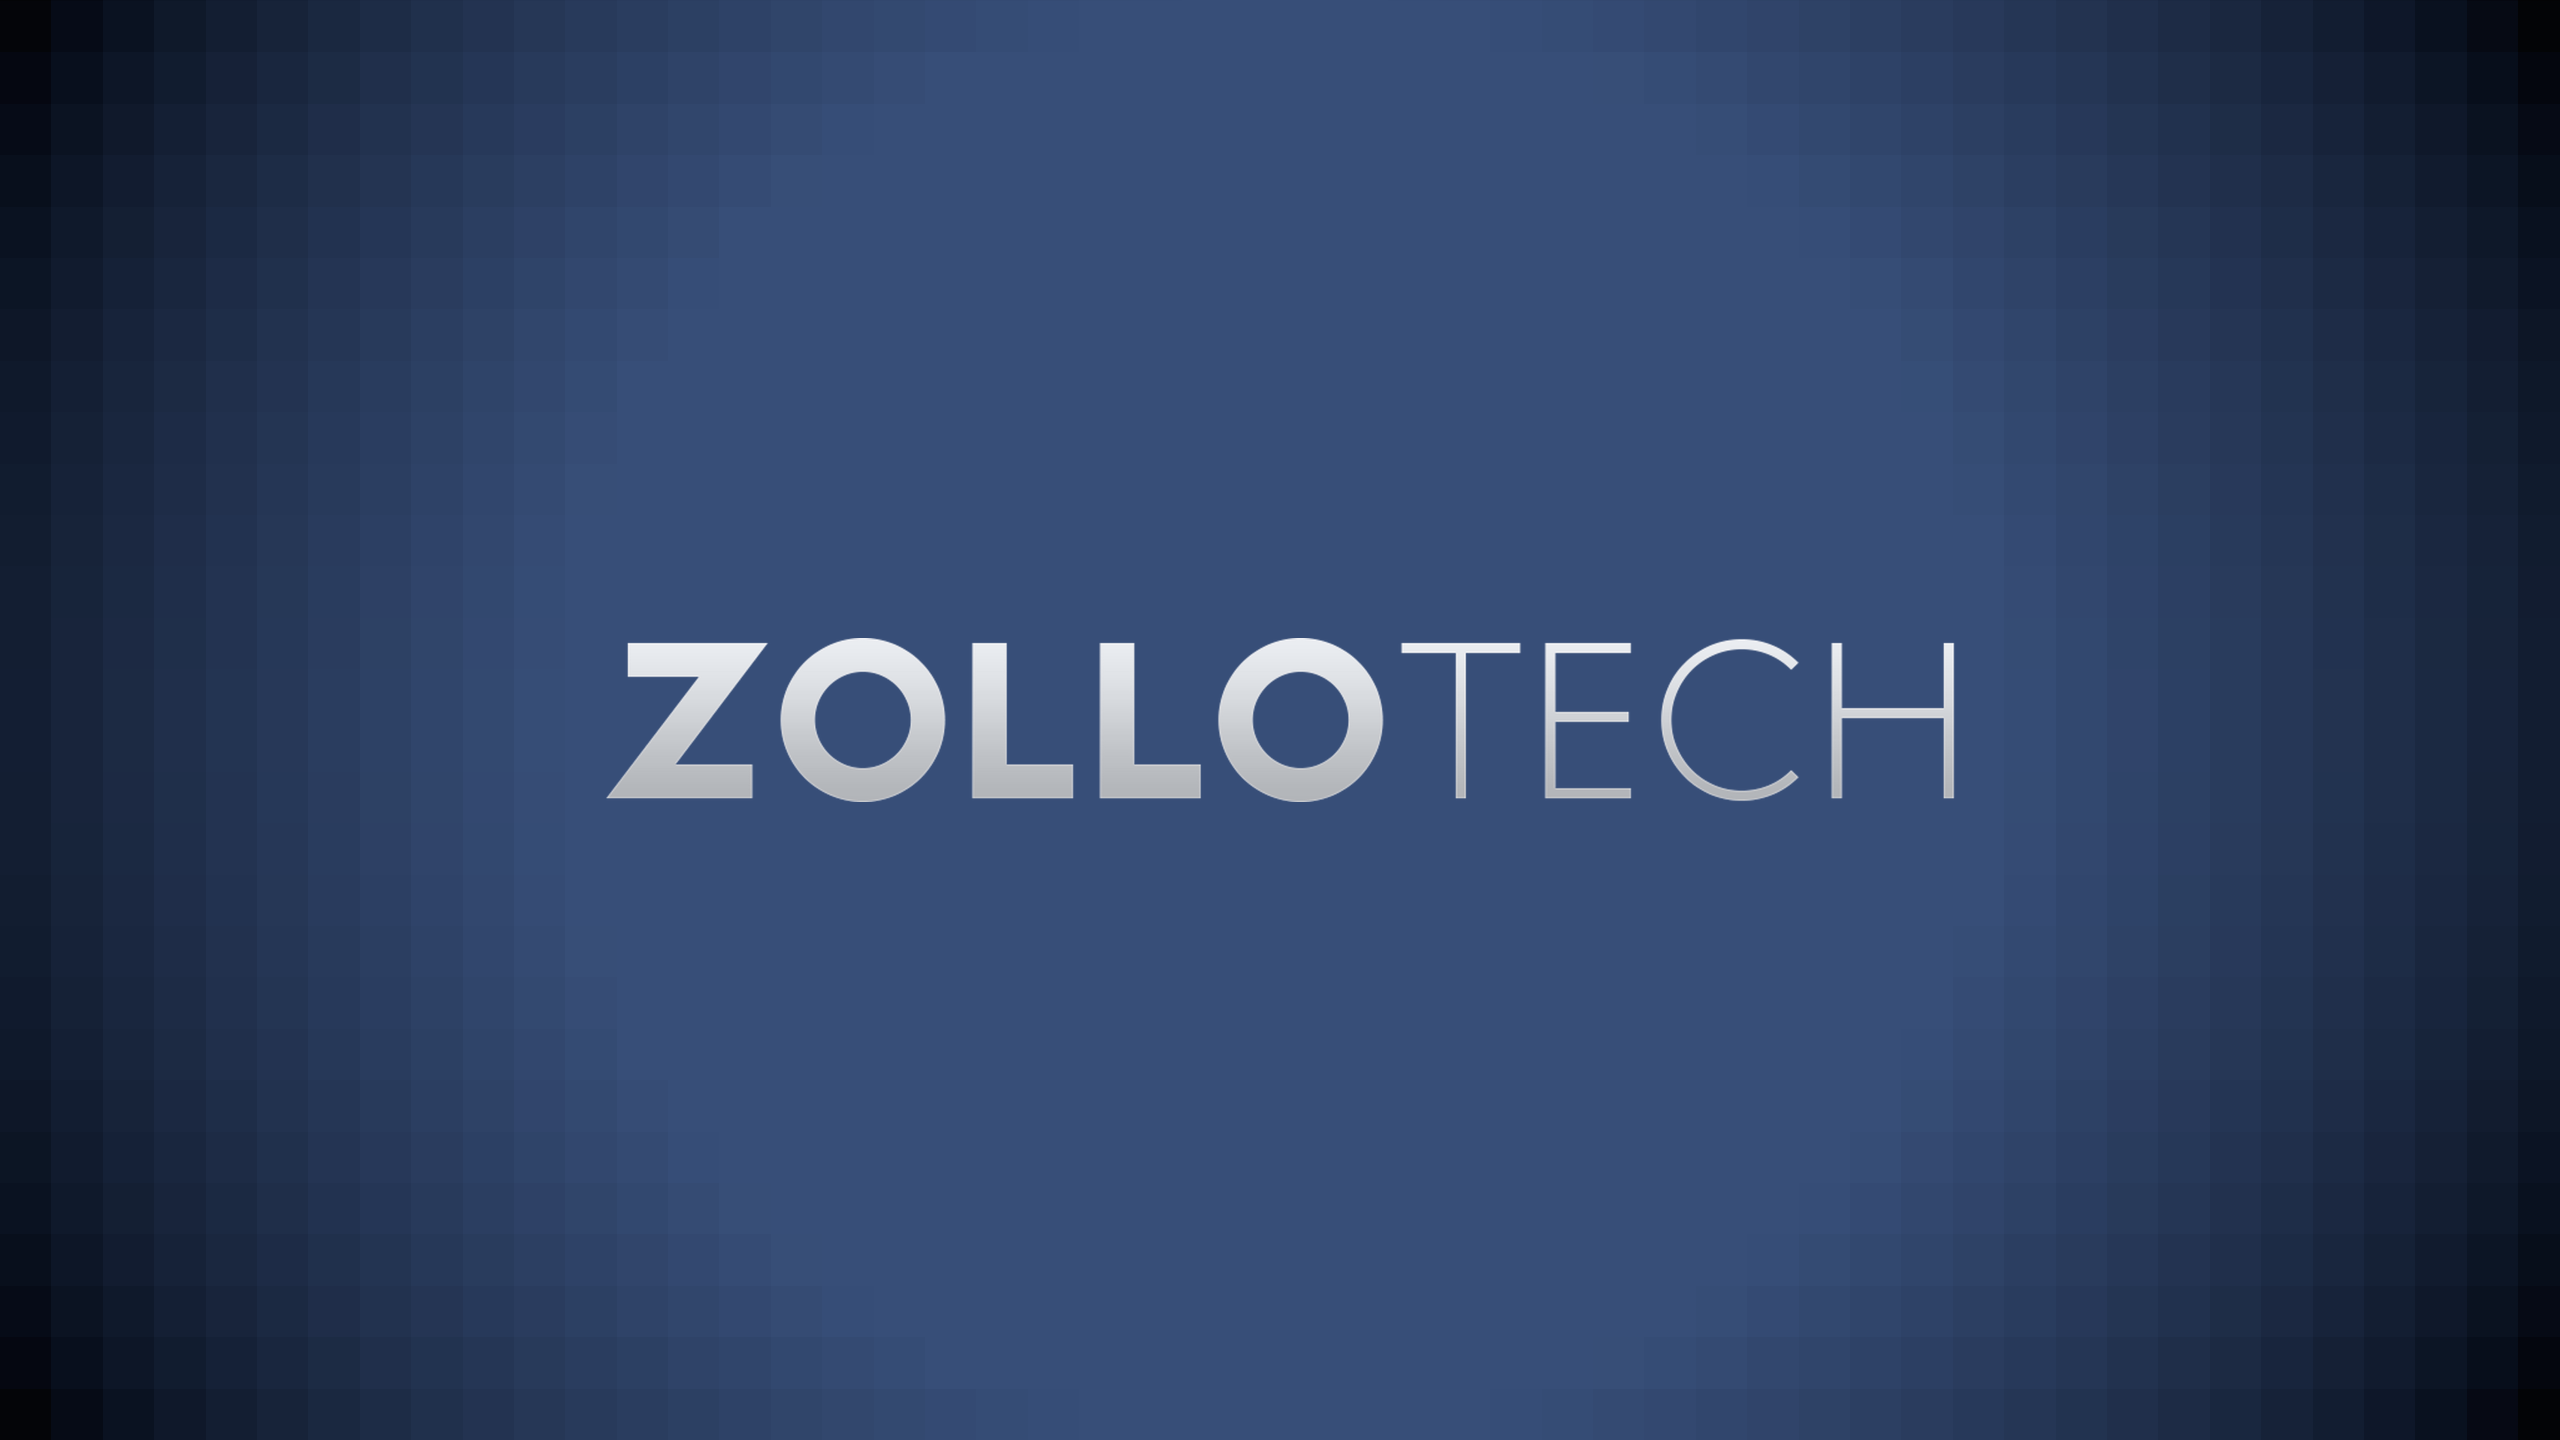 zollotech desktop wallpaper